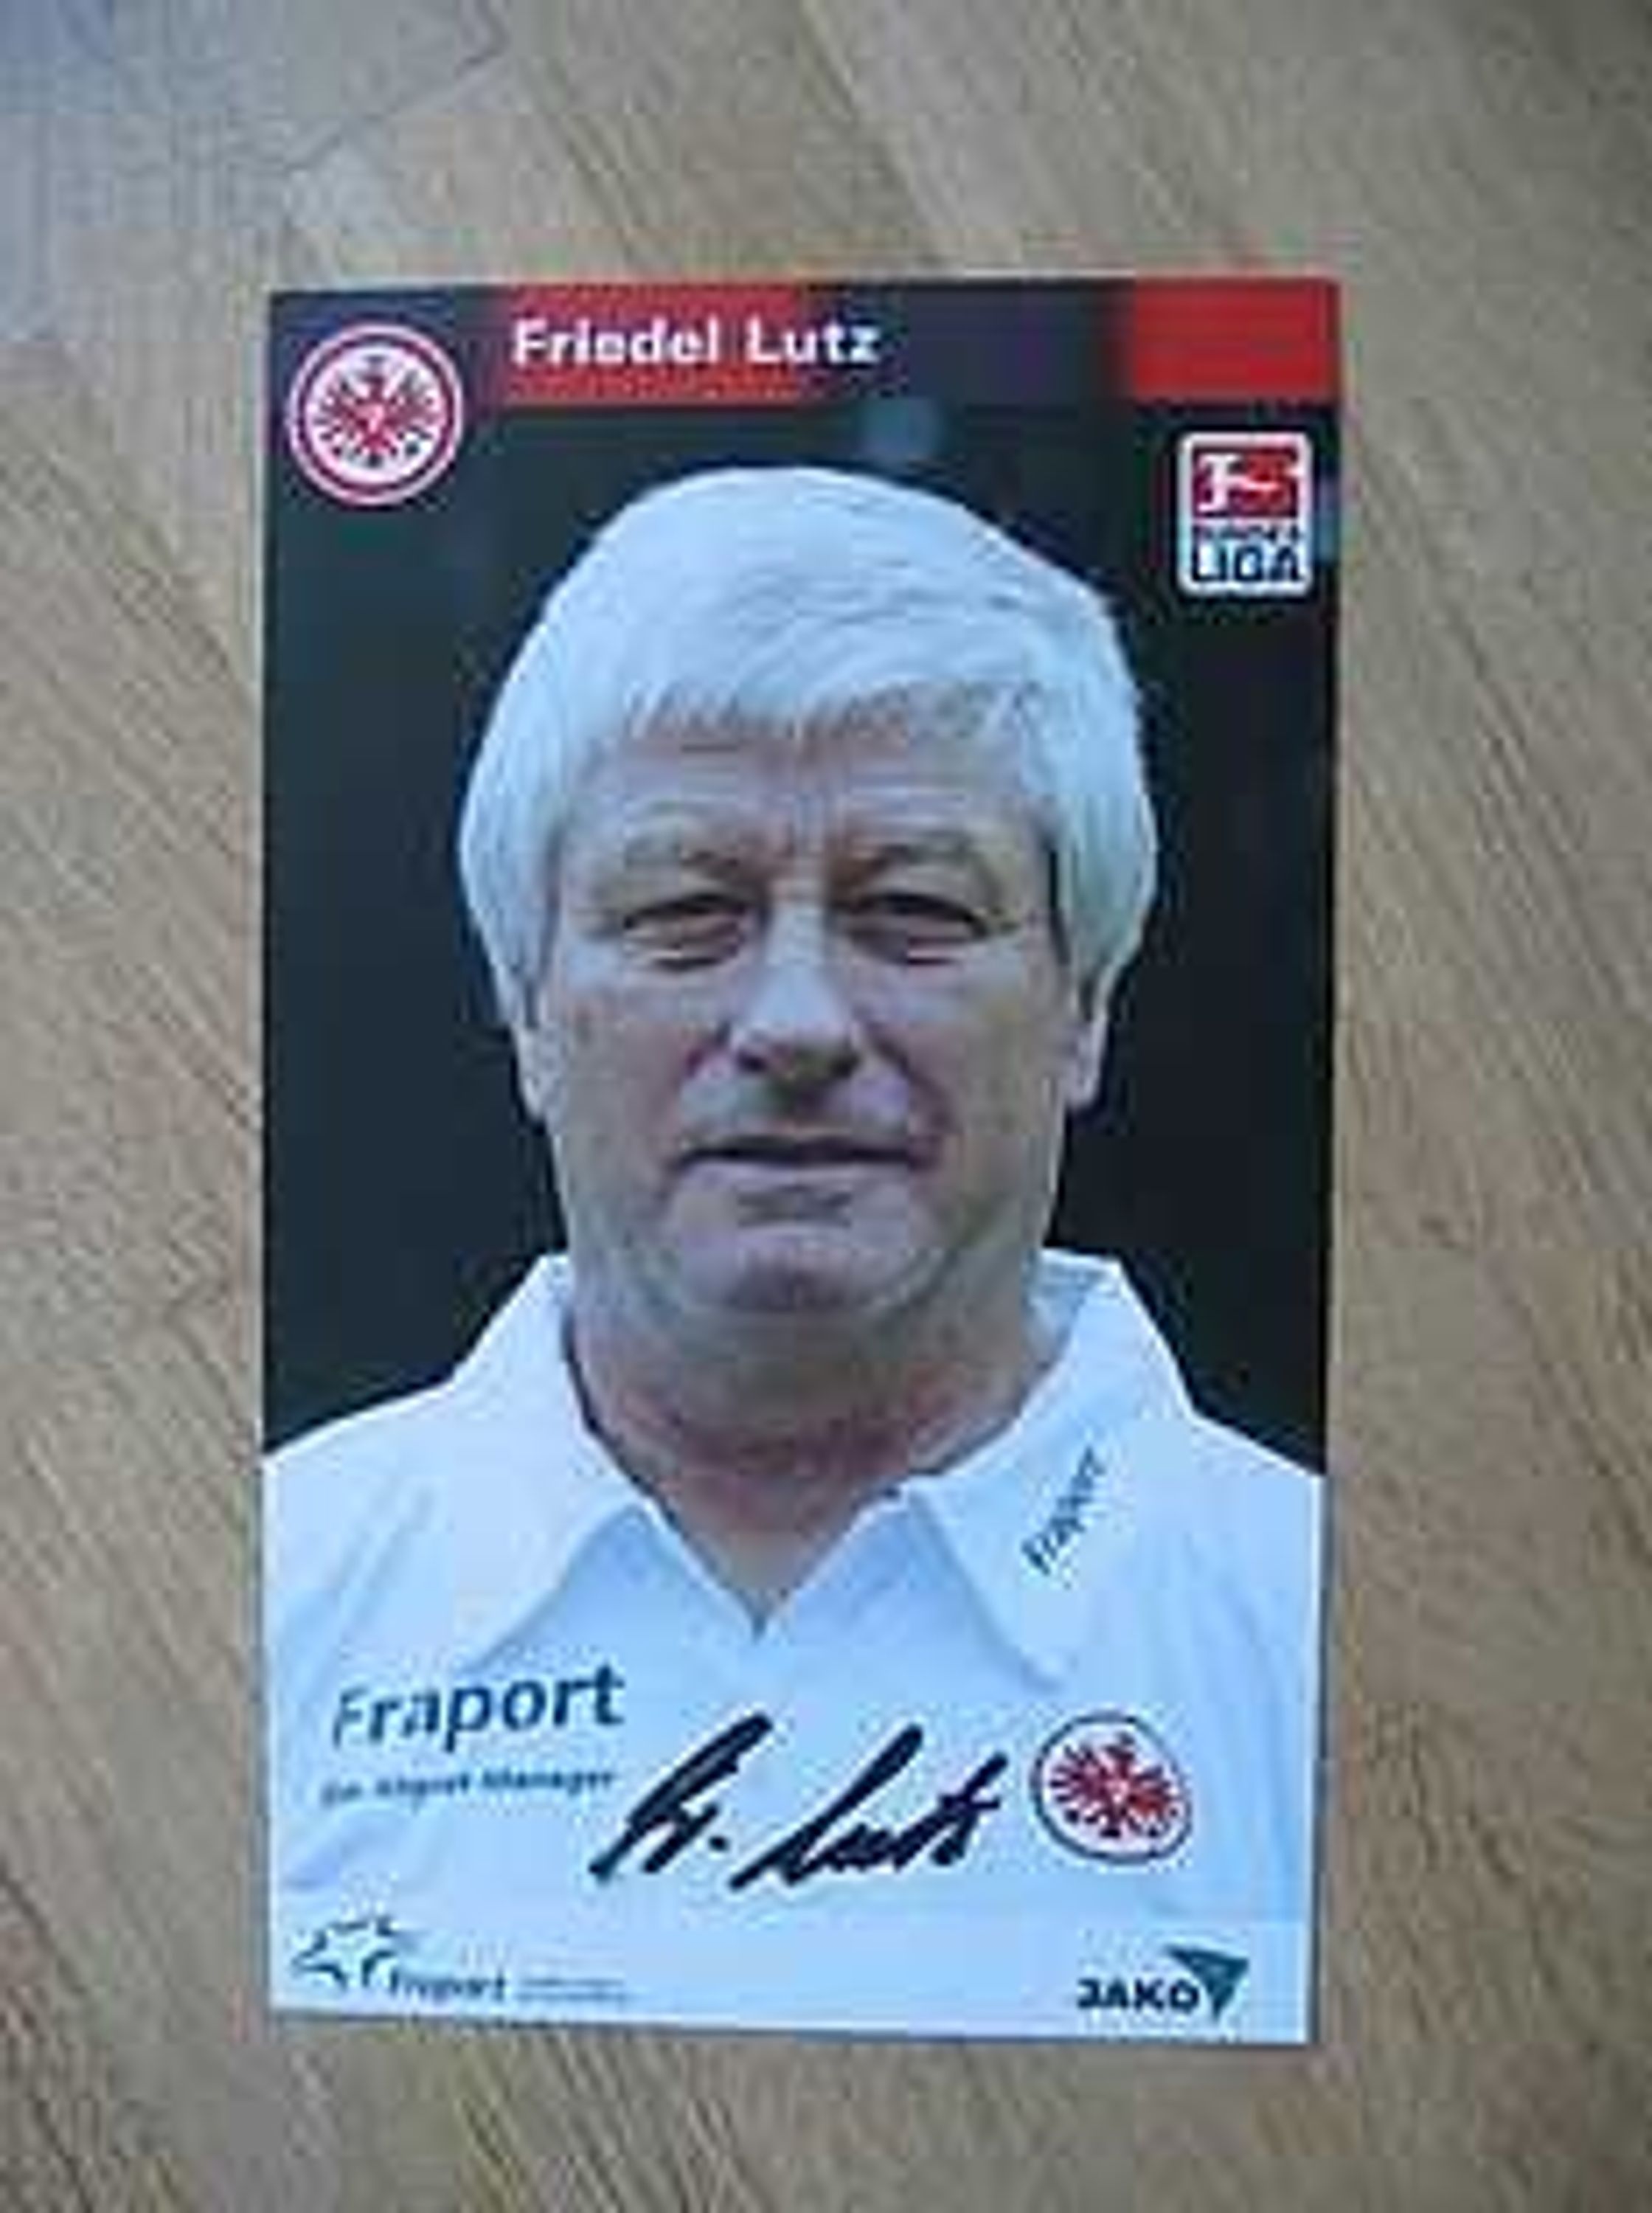 Eintracht Frankfurt Saison 03/04 Friedel Lutz Autogramm gebraucht kaufen bei ...